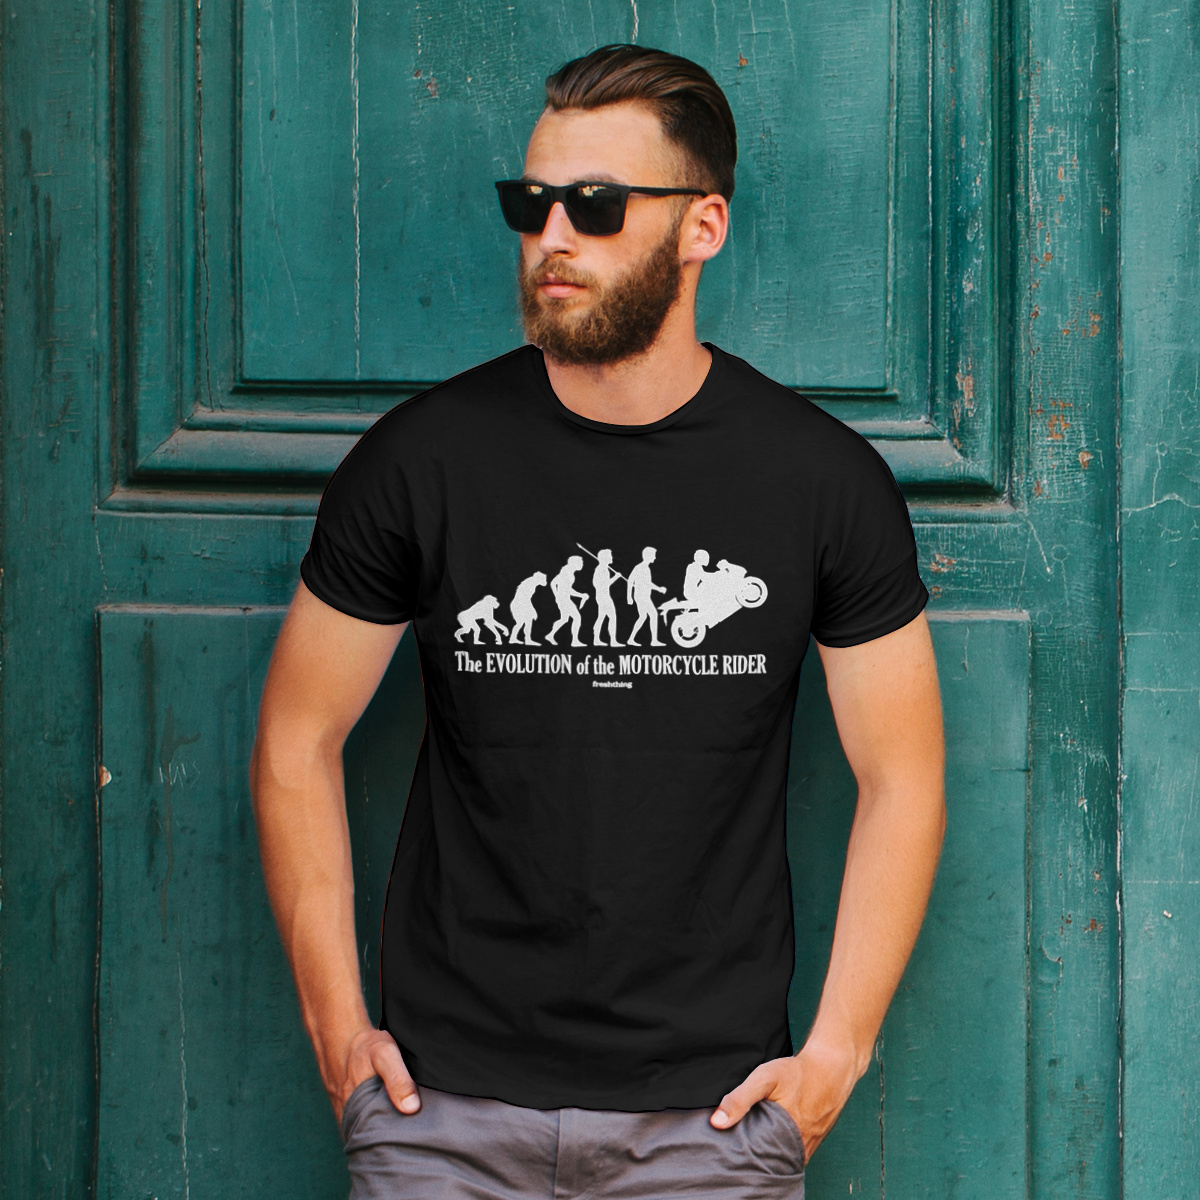 Ewolucja do Motocyklisty - Męska Koszulka Czarna